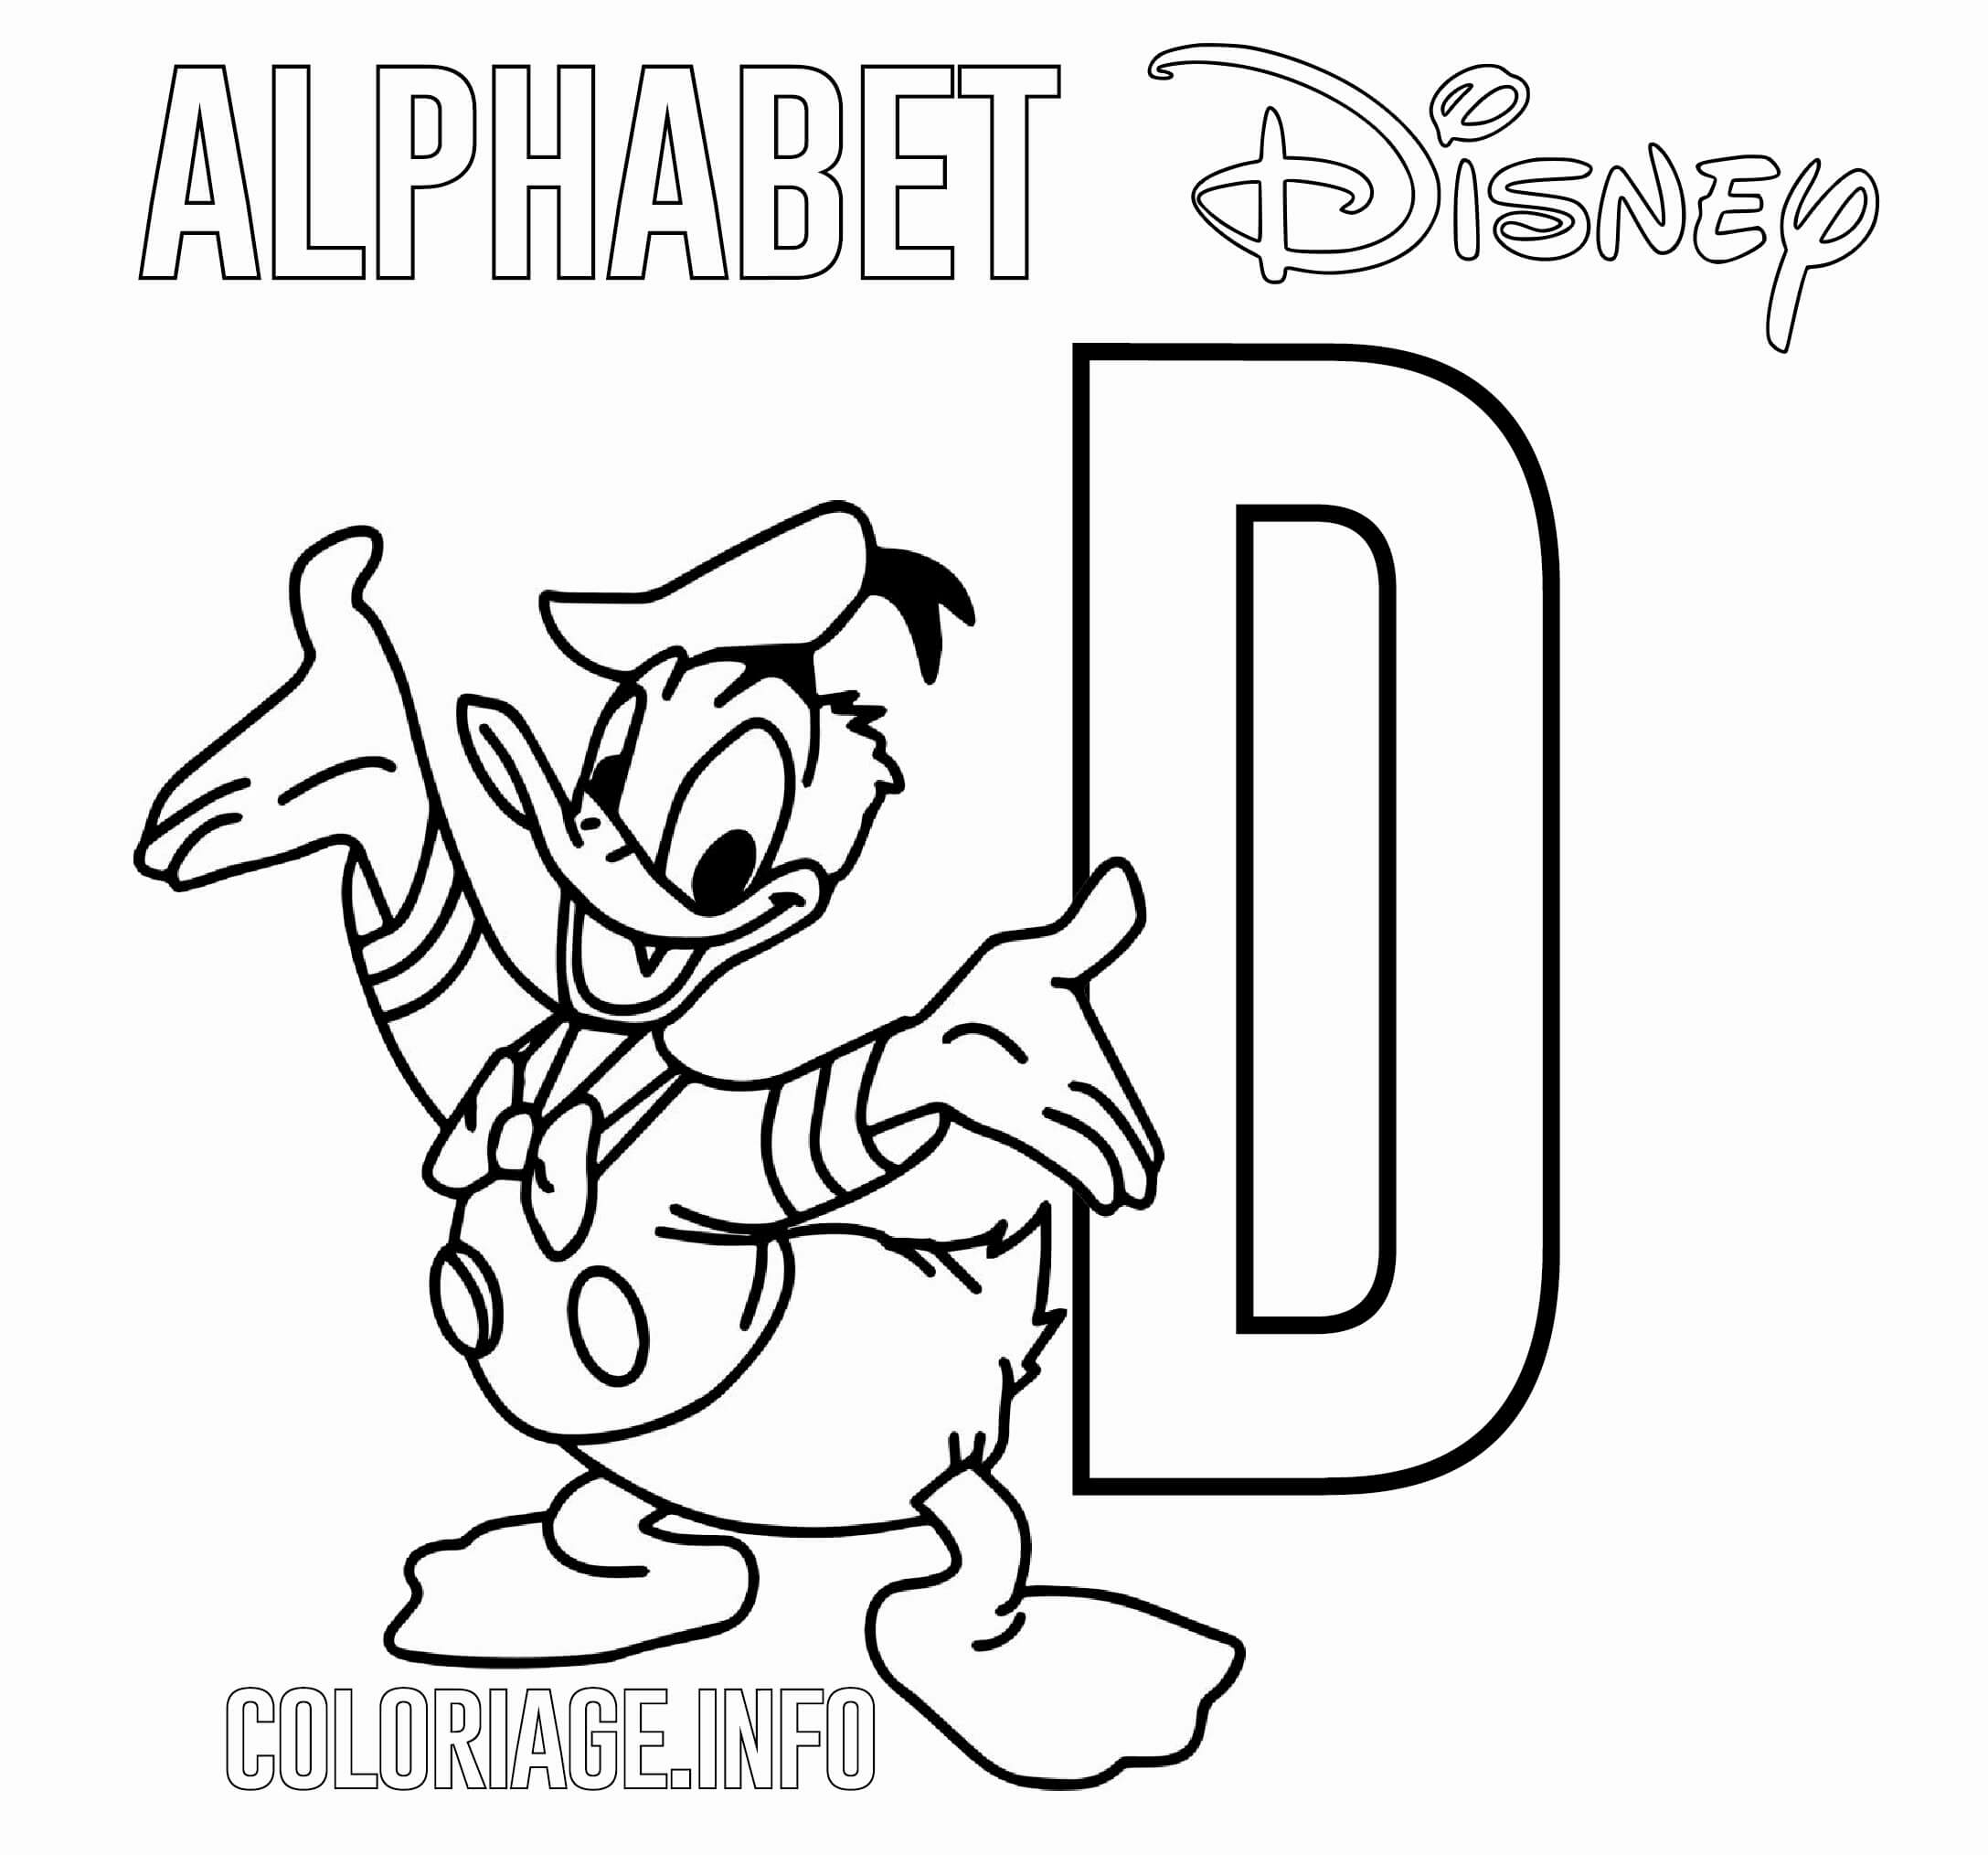 coloriage Lettre D pour Donald